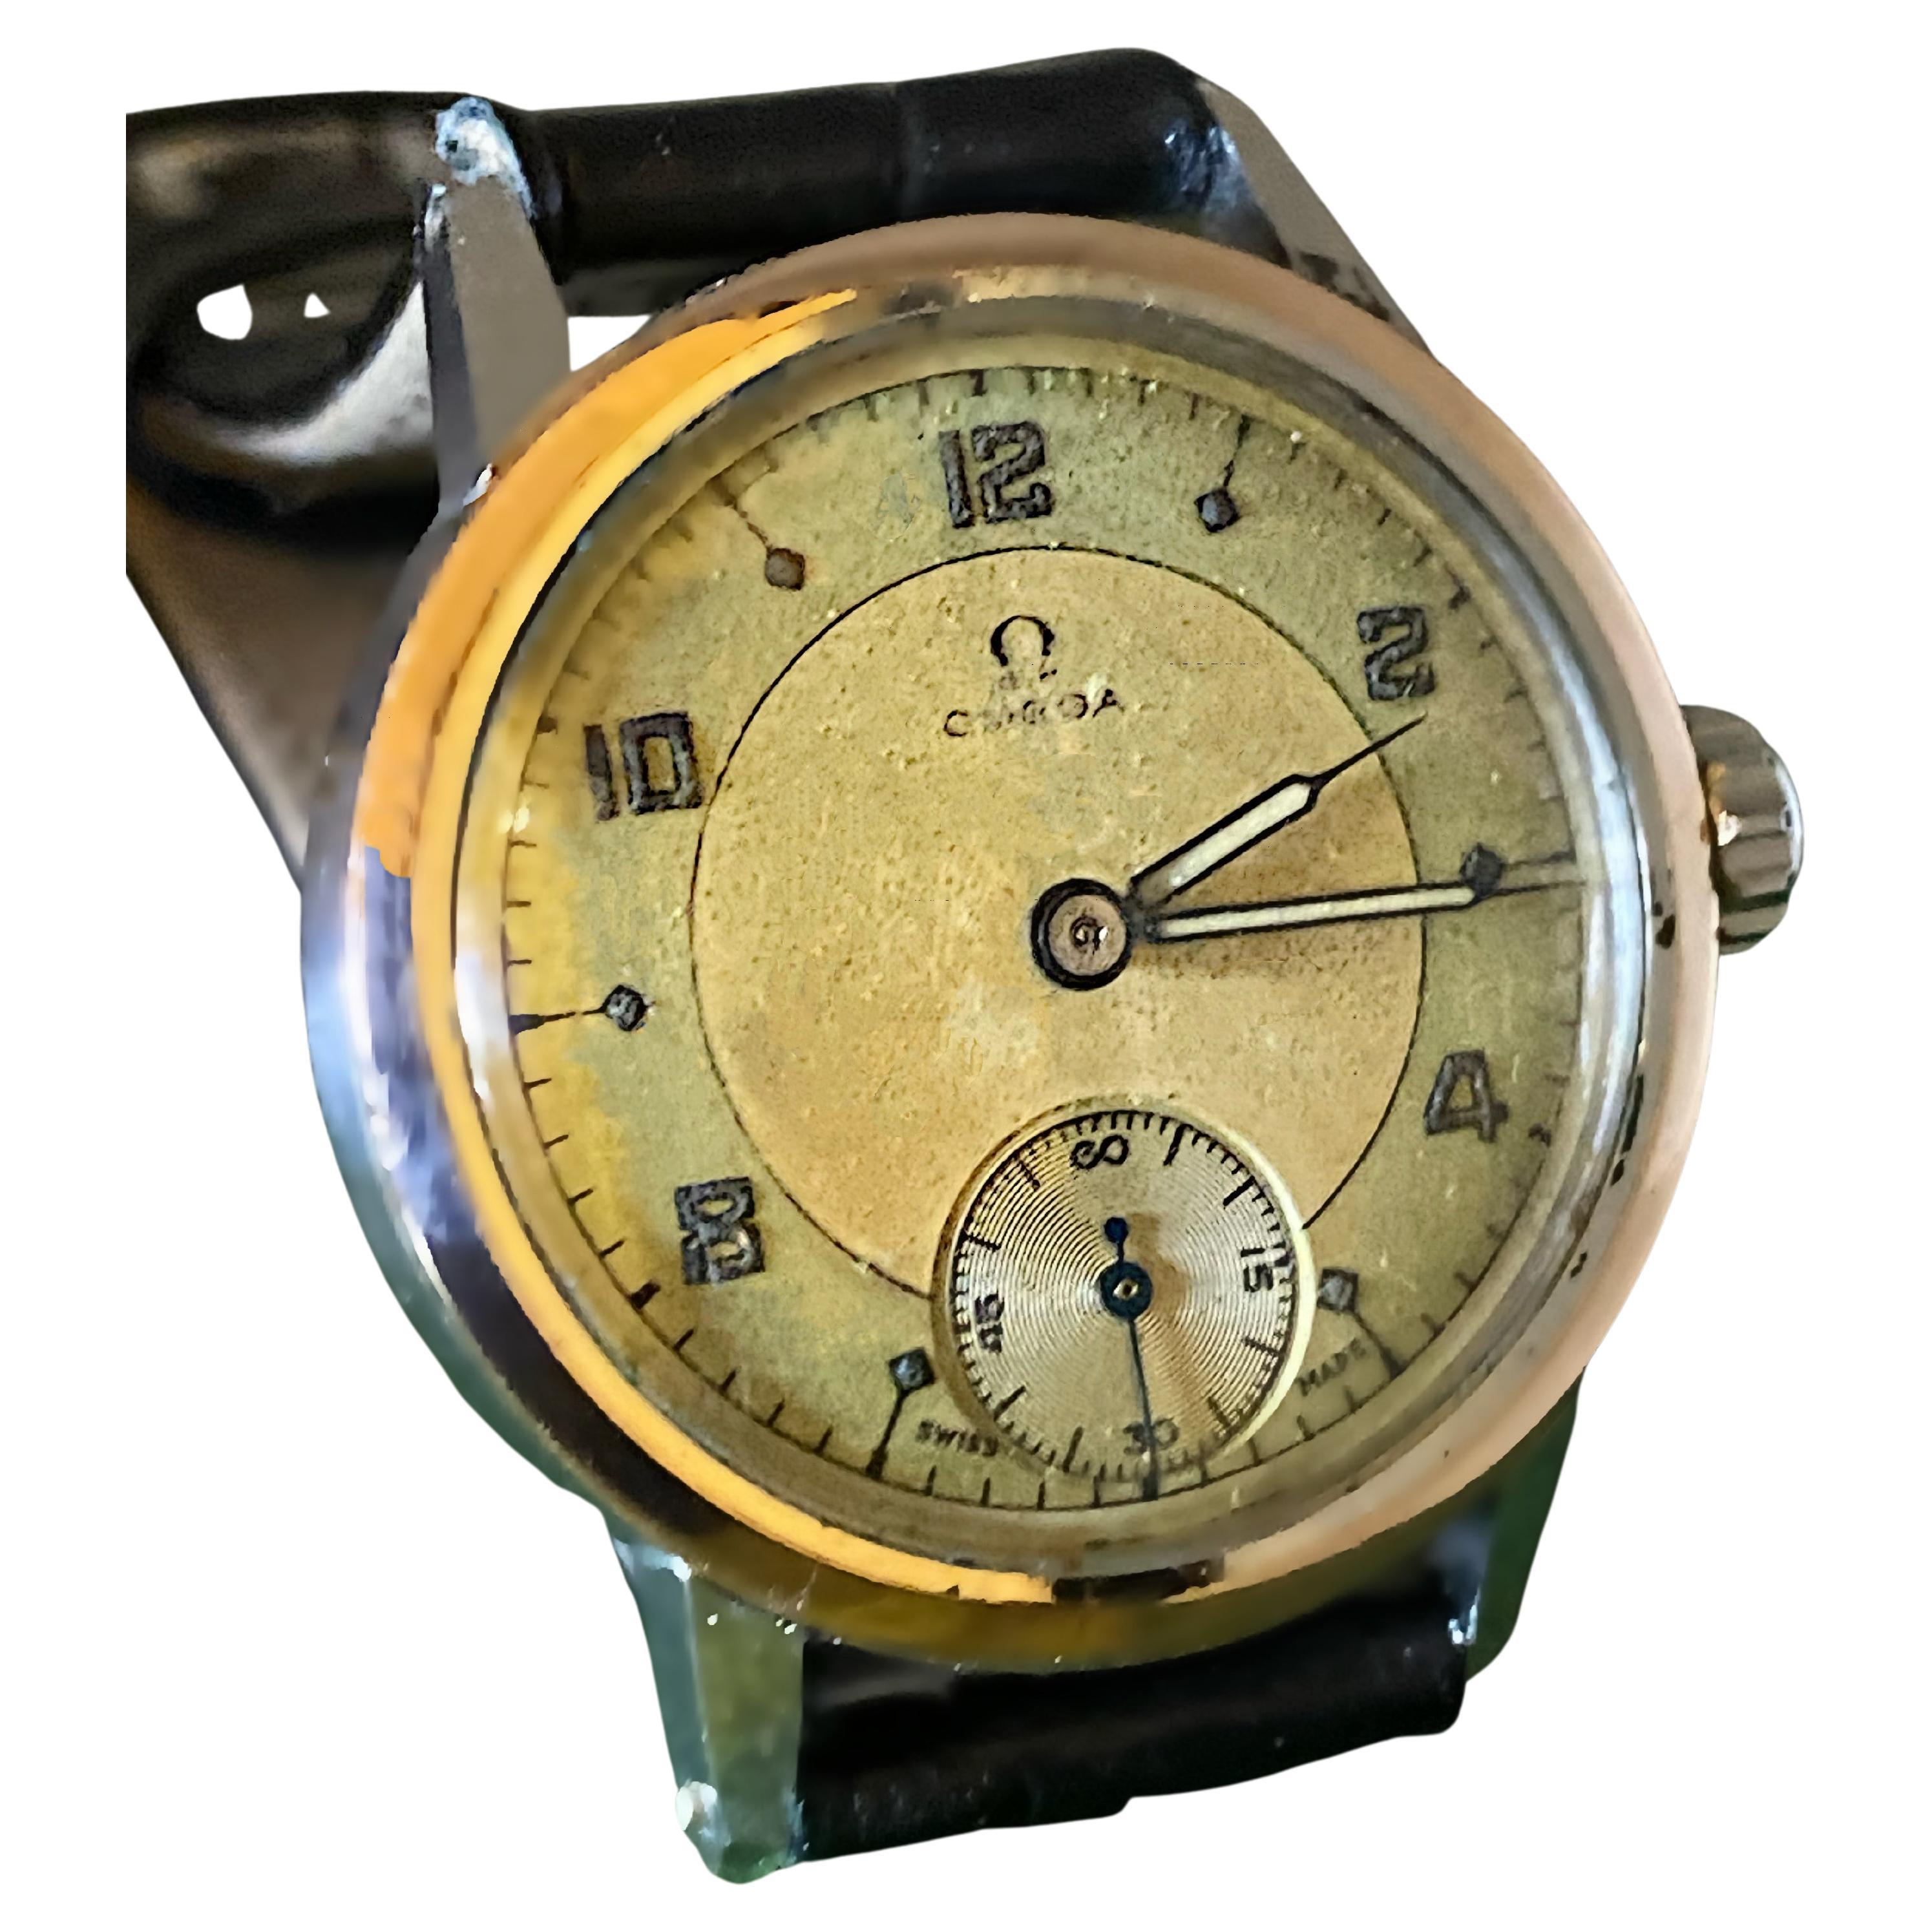 V Rare Omega Military c1943 Caliber 100 Watch. Two-Tone Dial. All Original Parts